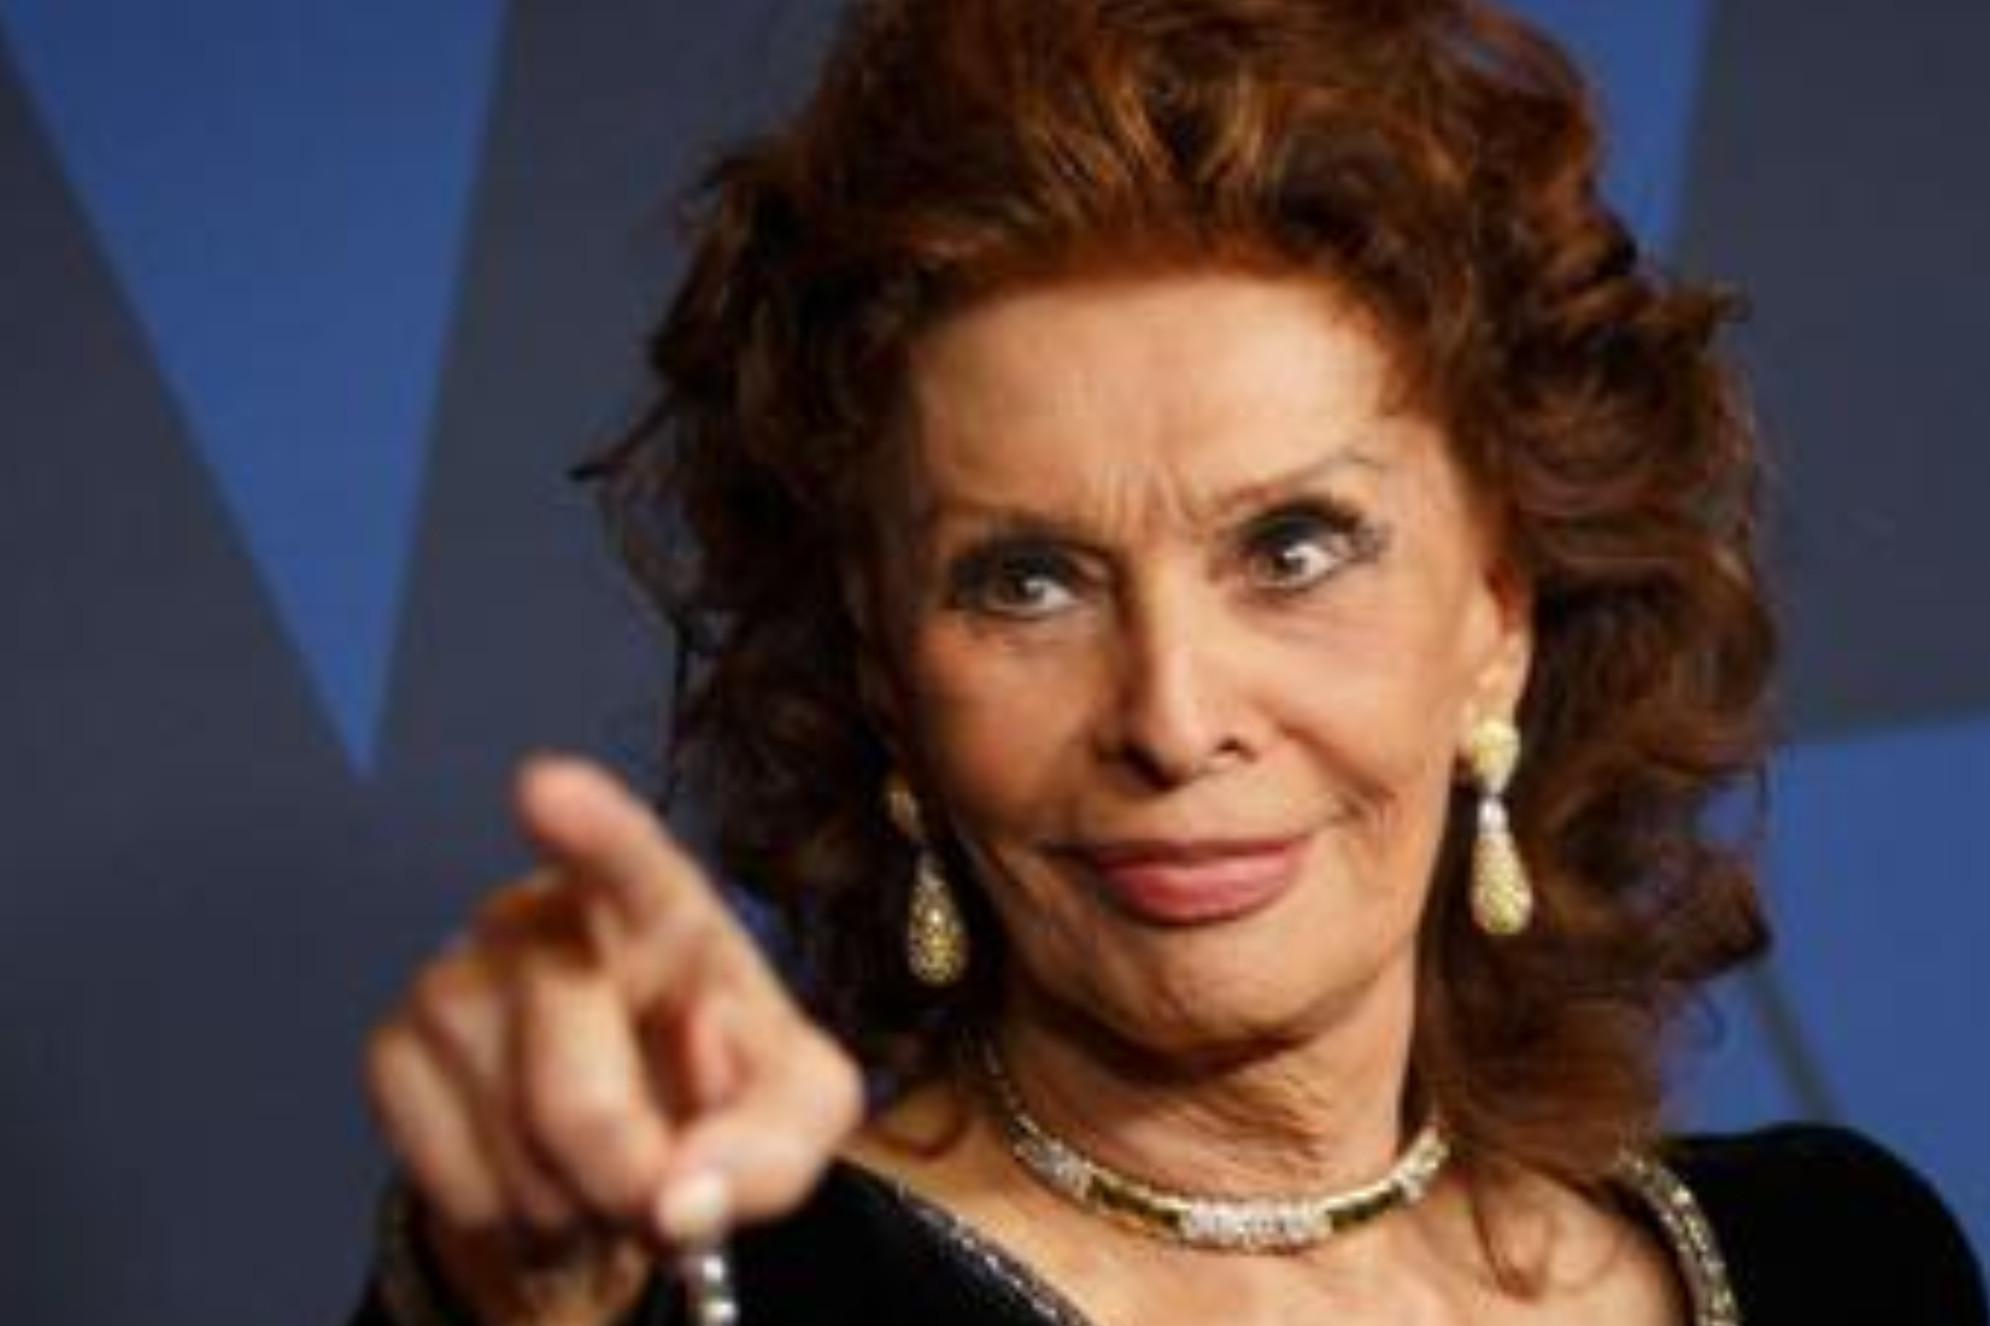 David Donatello 2021, Sophia Loren miglior attrice